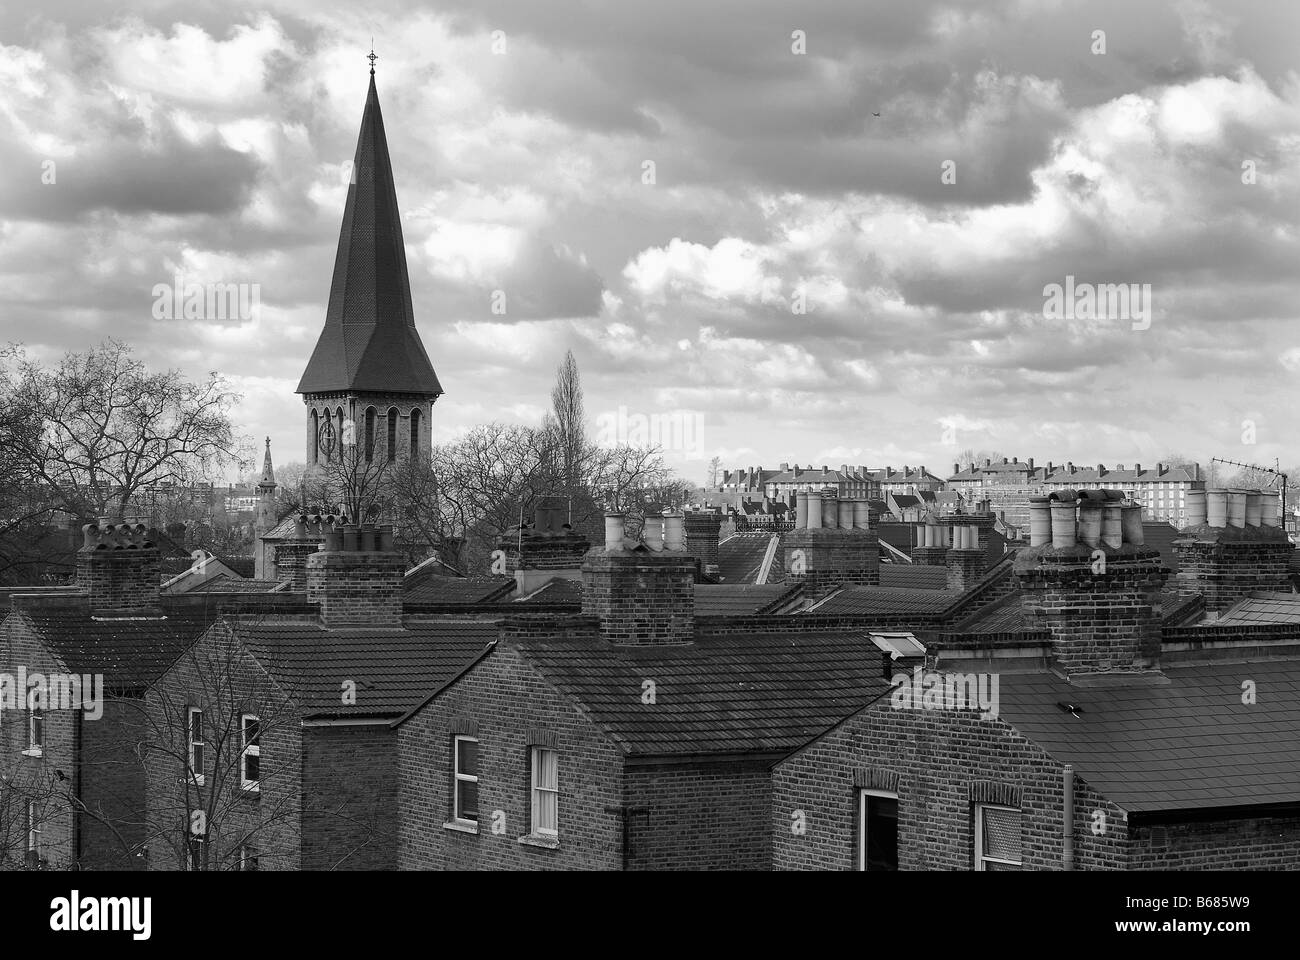 Anzeigen von Reihenhäusern in East Dulwich, South London, UK, einschließlich St John's Church spire Stockfoto